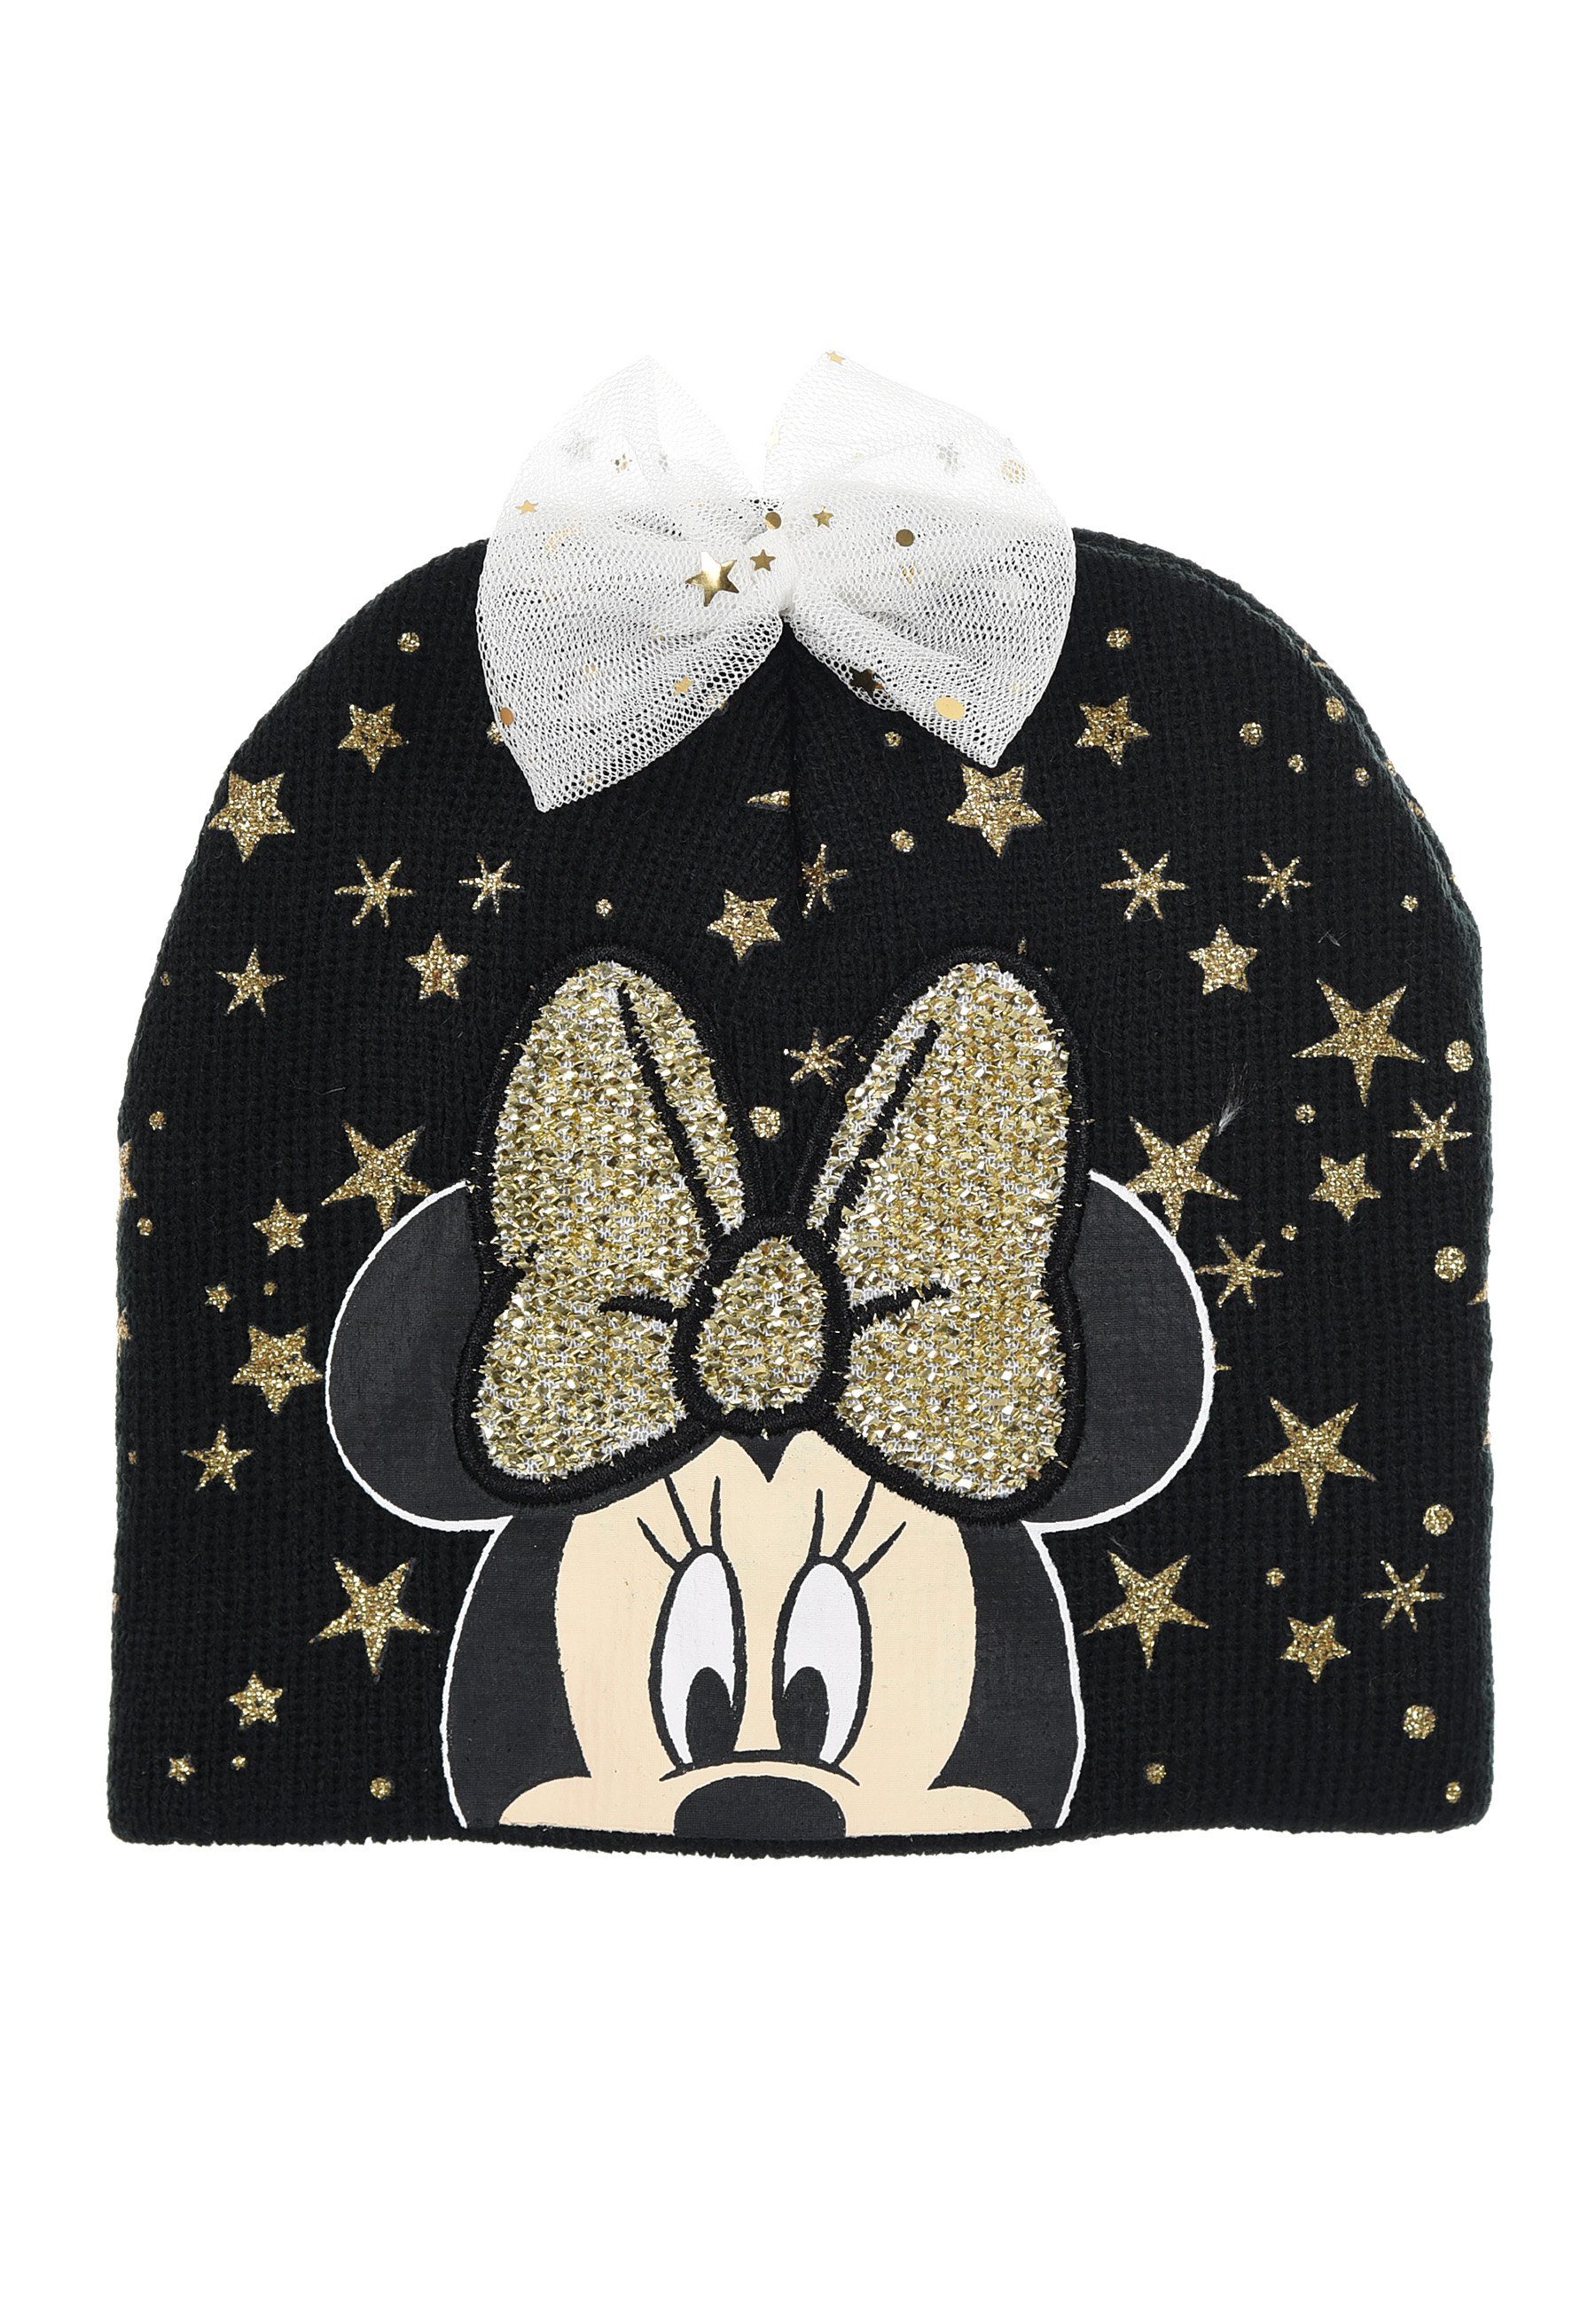 Disney Minnie Mouse Beanie Strick Mütze Winter-Mütze Mädchen Baby Schwarz